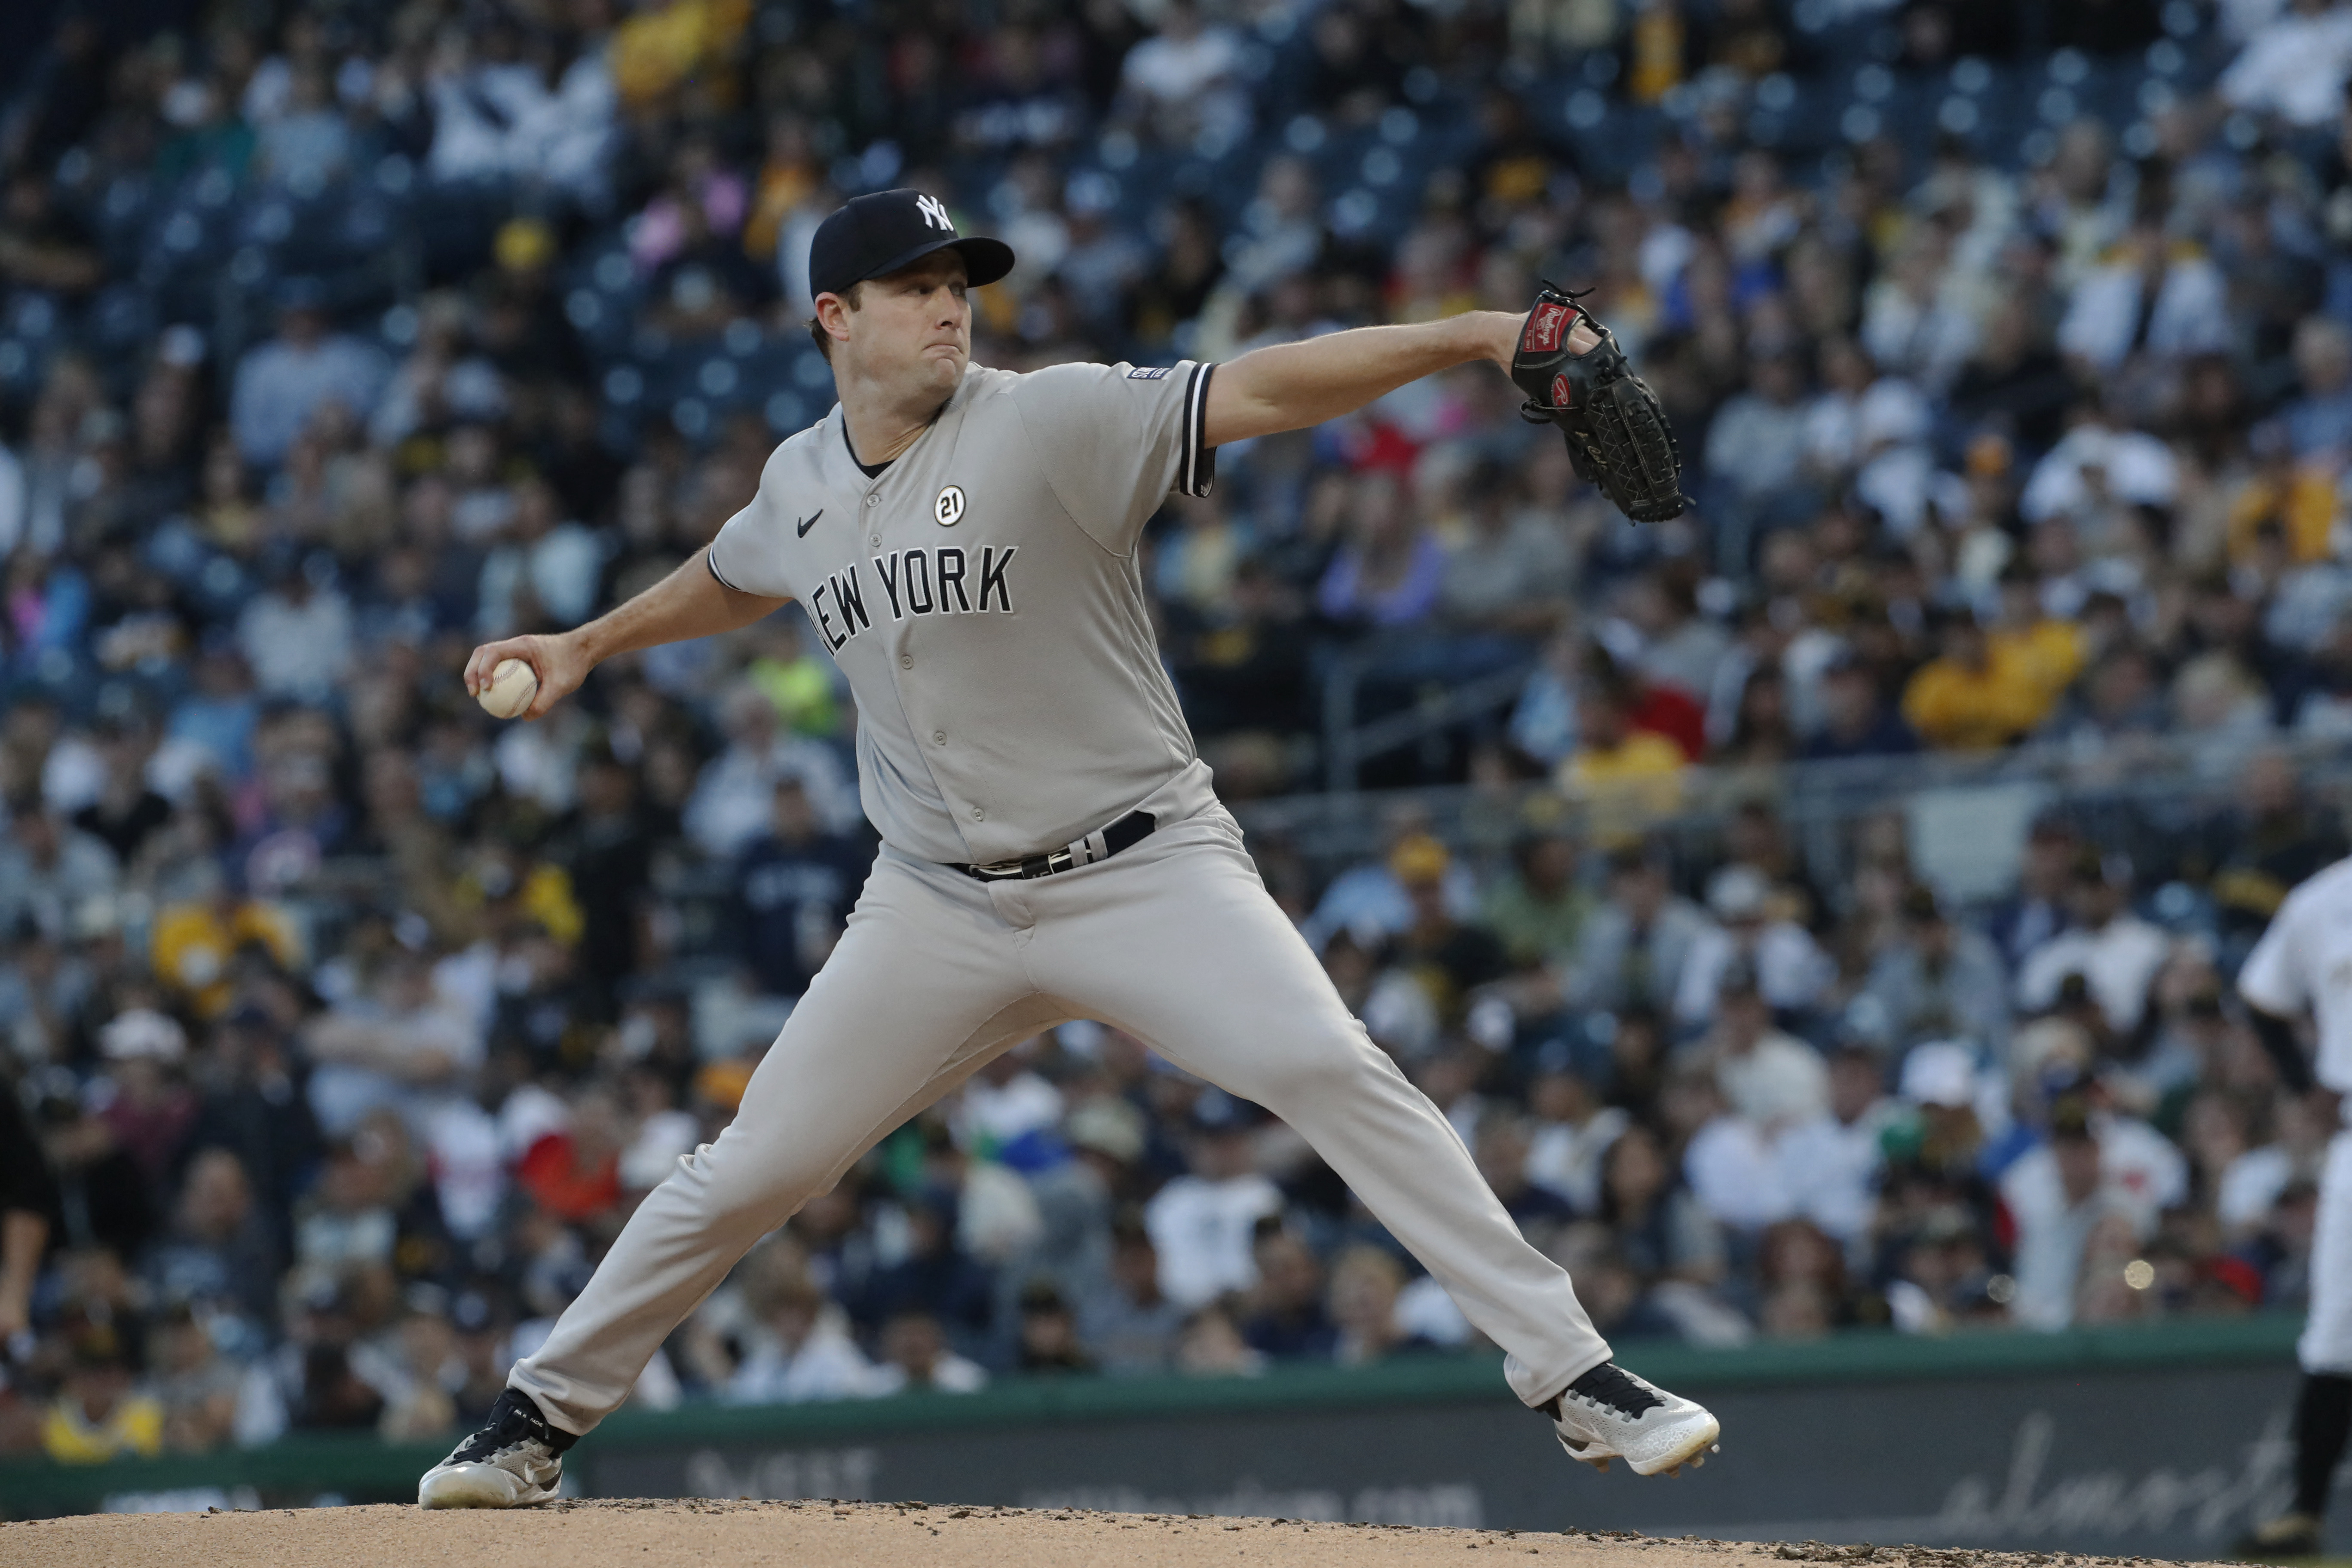 Yankees pitcher Anthony Misiewicz injured during Pirates game